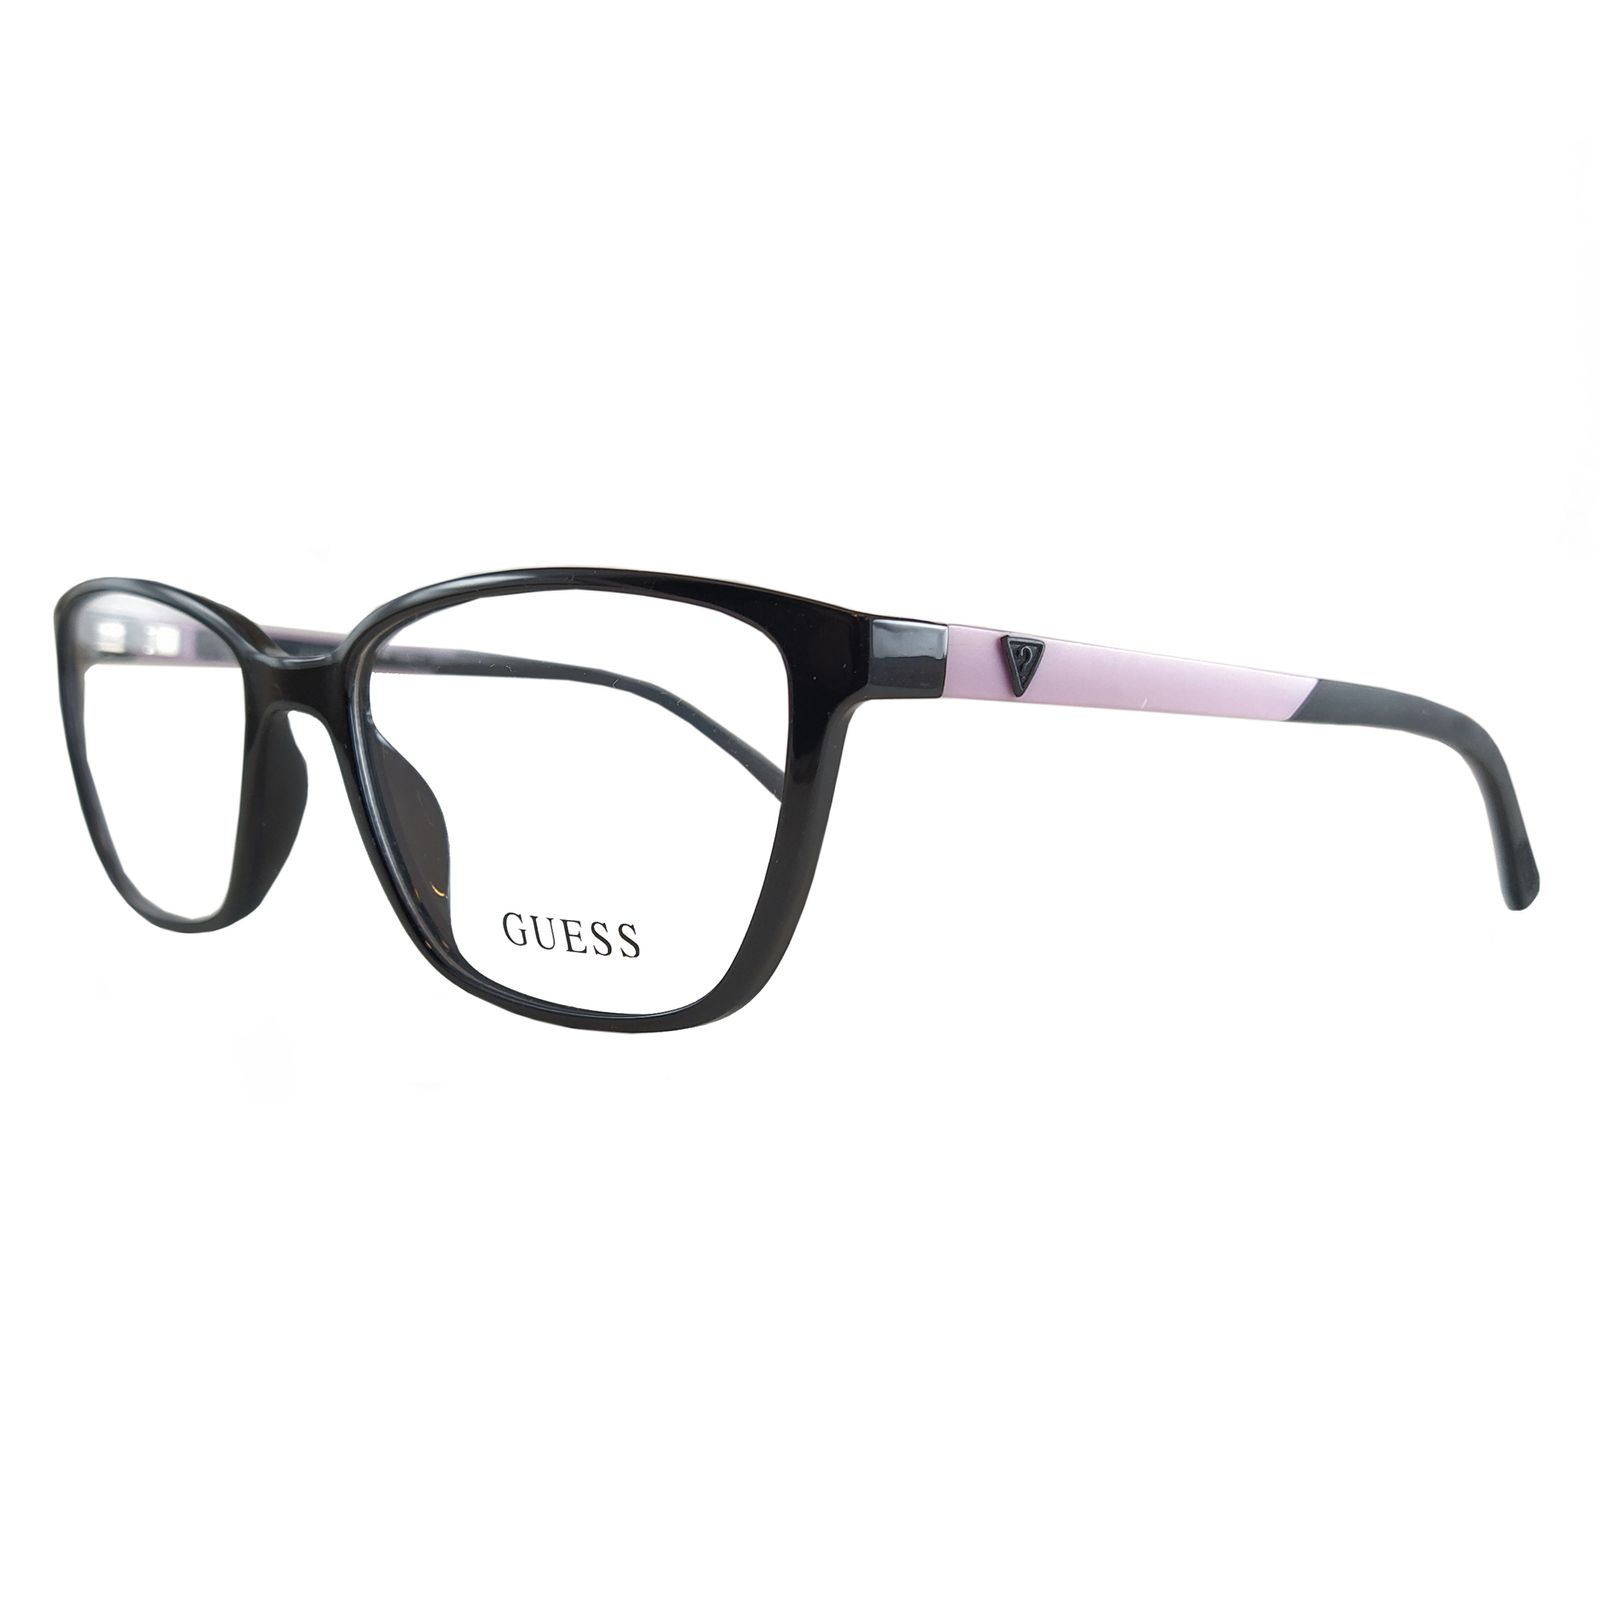 فریم عینک طبی زنانه گس مدل GU249600154 -  - 5